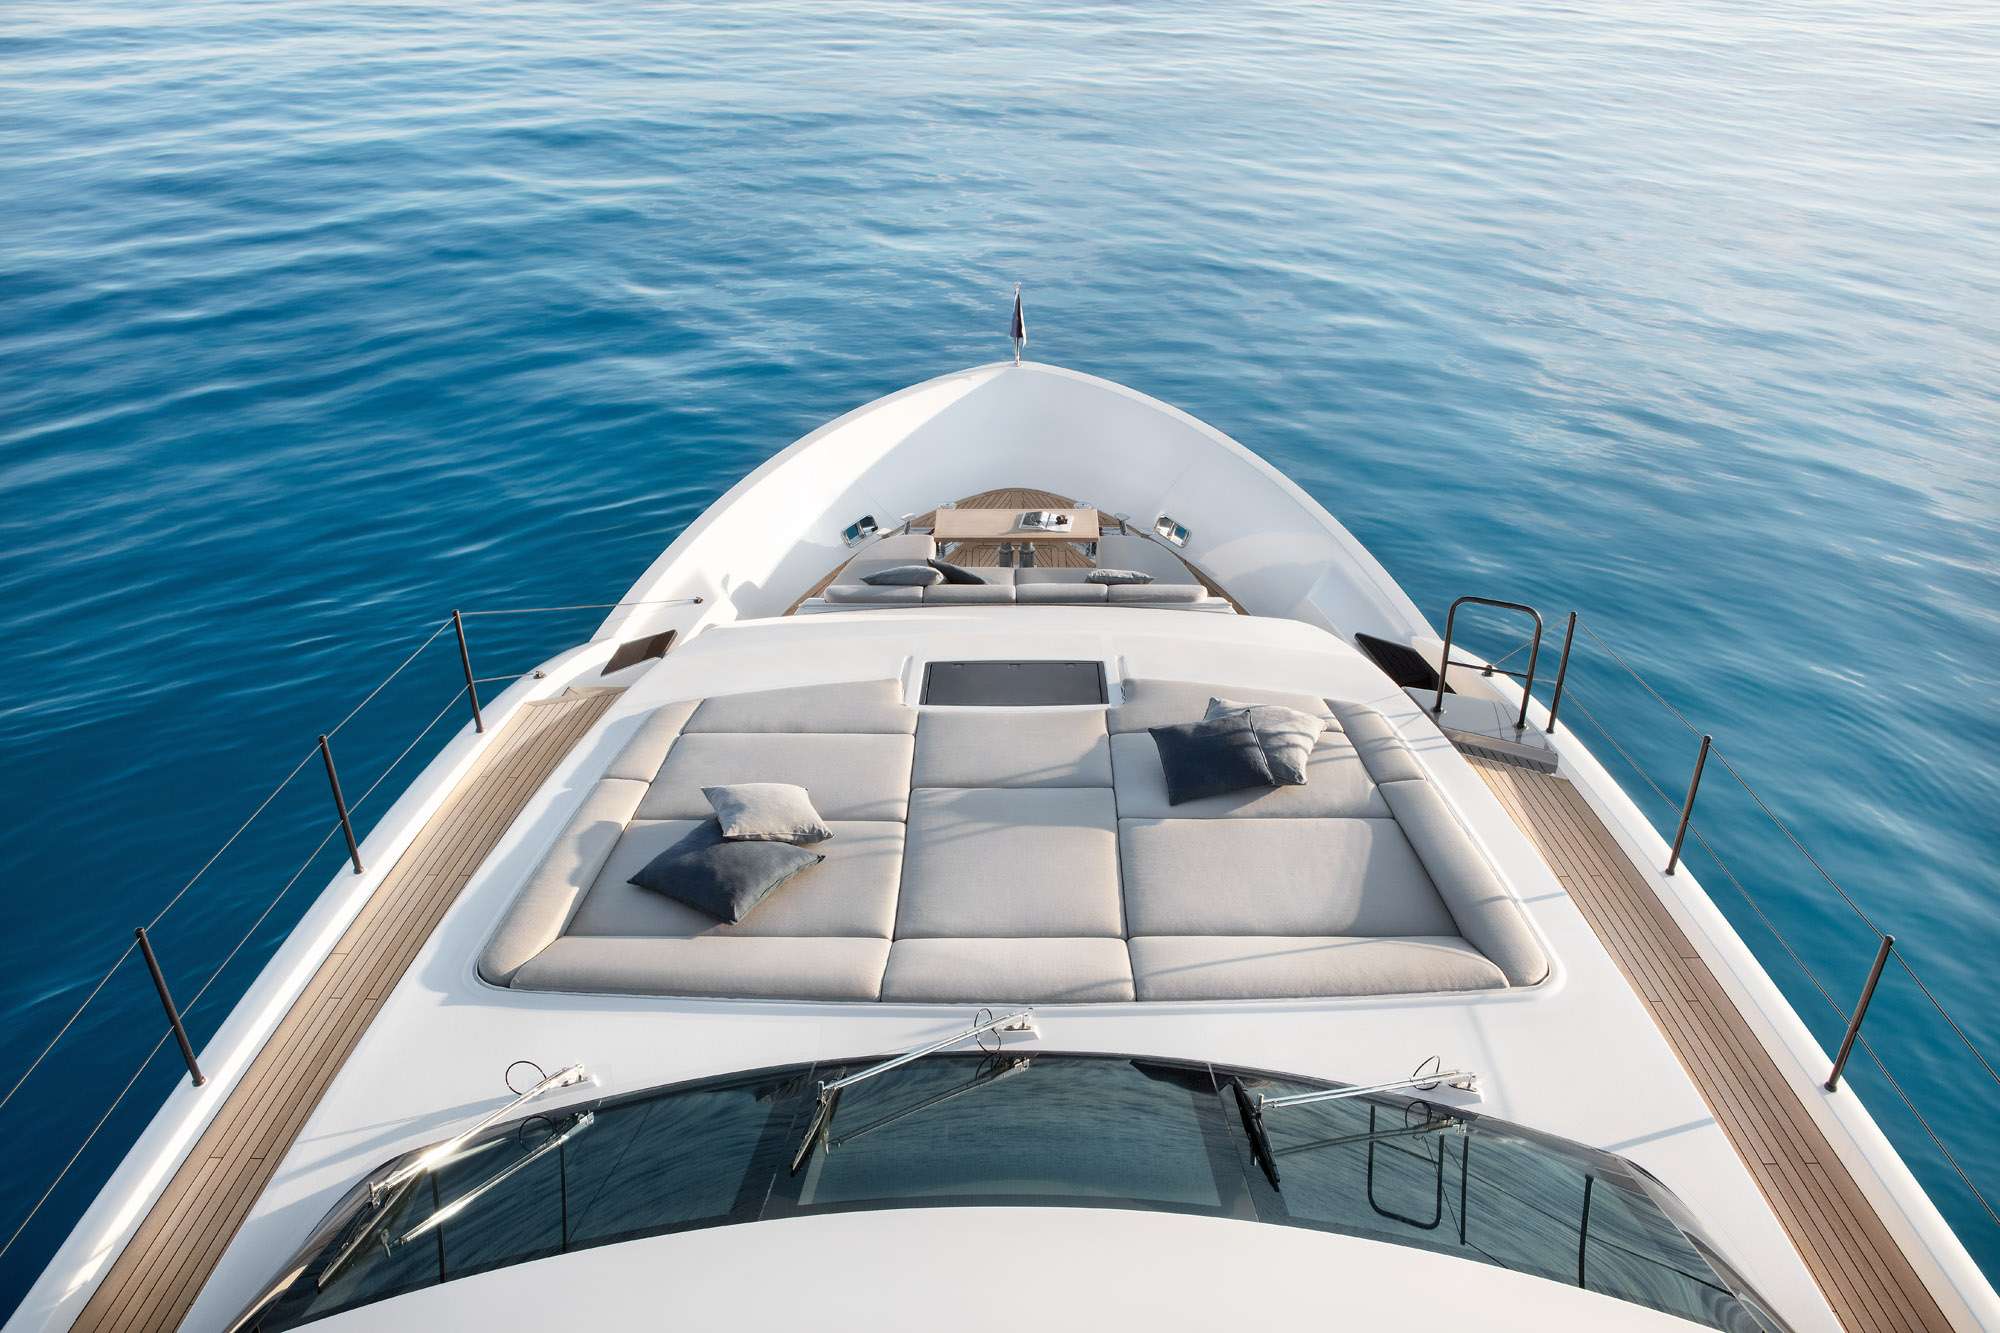 SEVEN - Yacht Charter El Masnou & Boat hire in Balearics & Spain 6